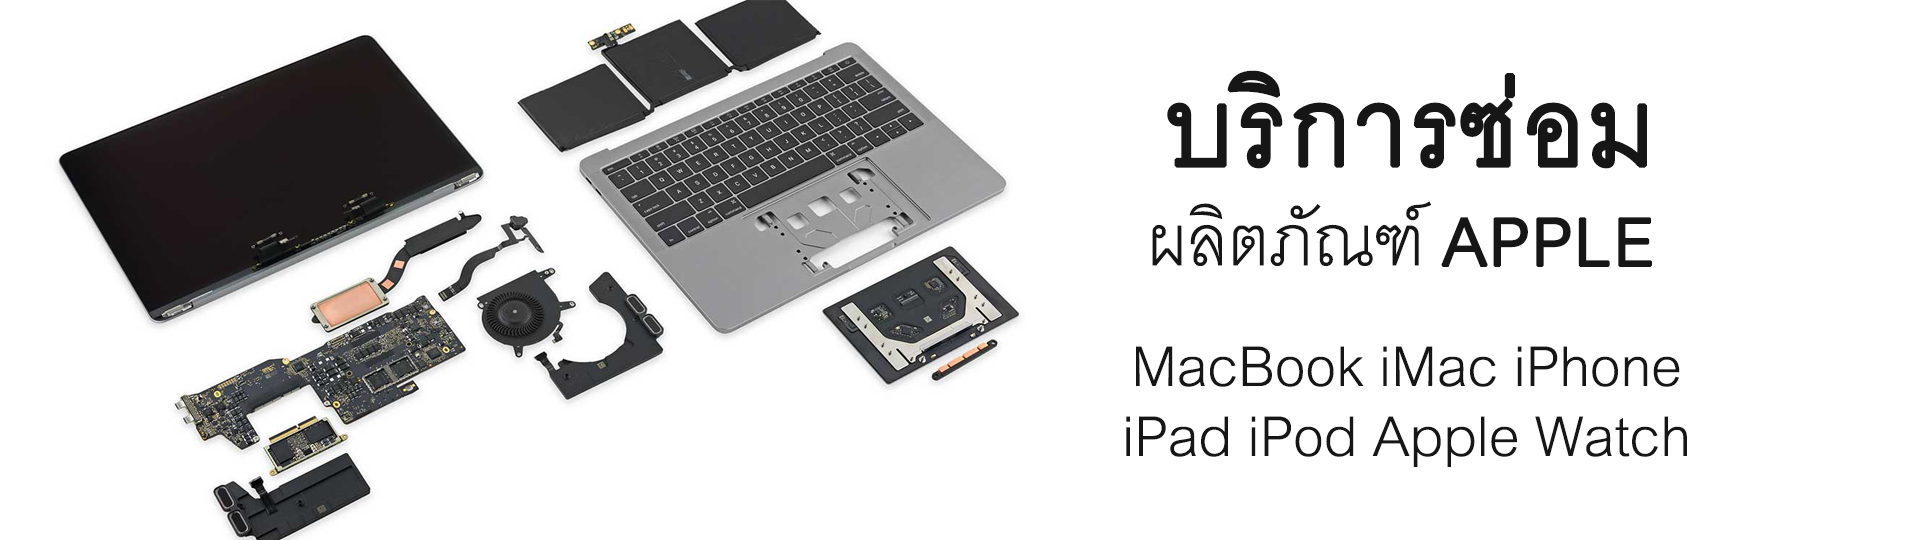 ซ่อม macbook เชียงใหม่